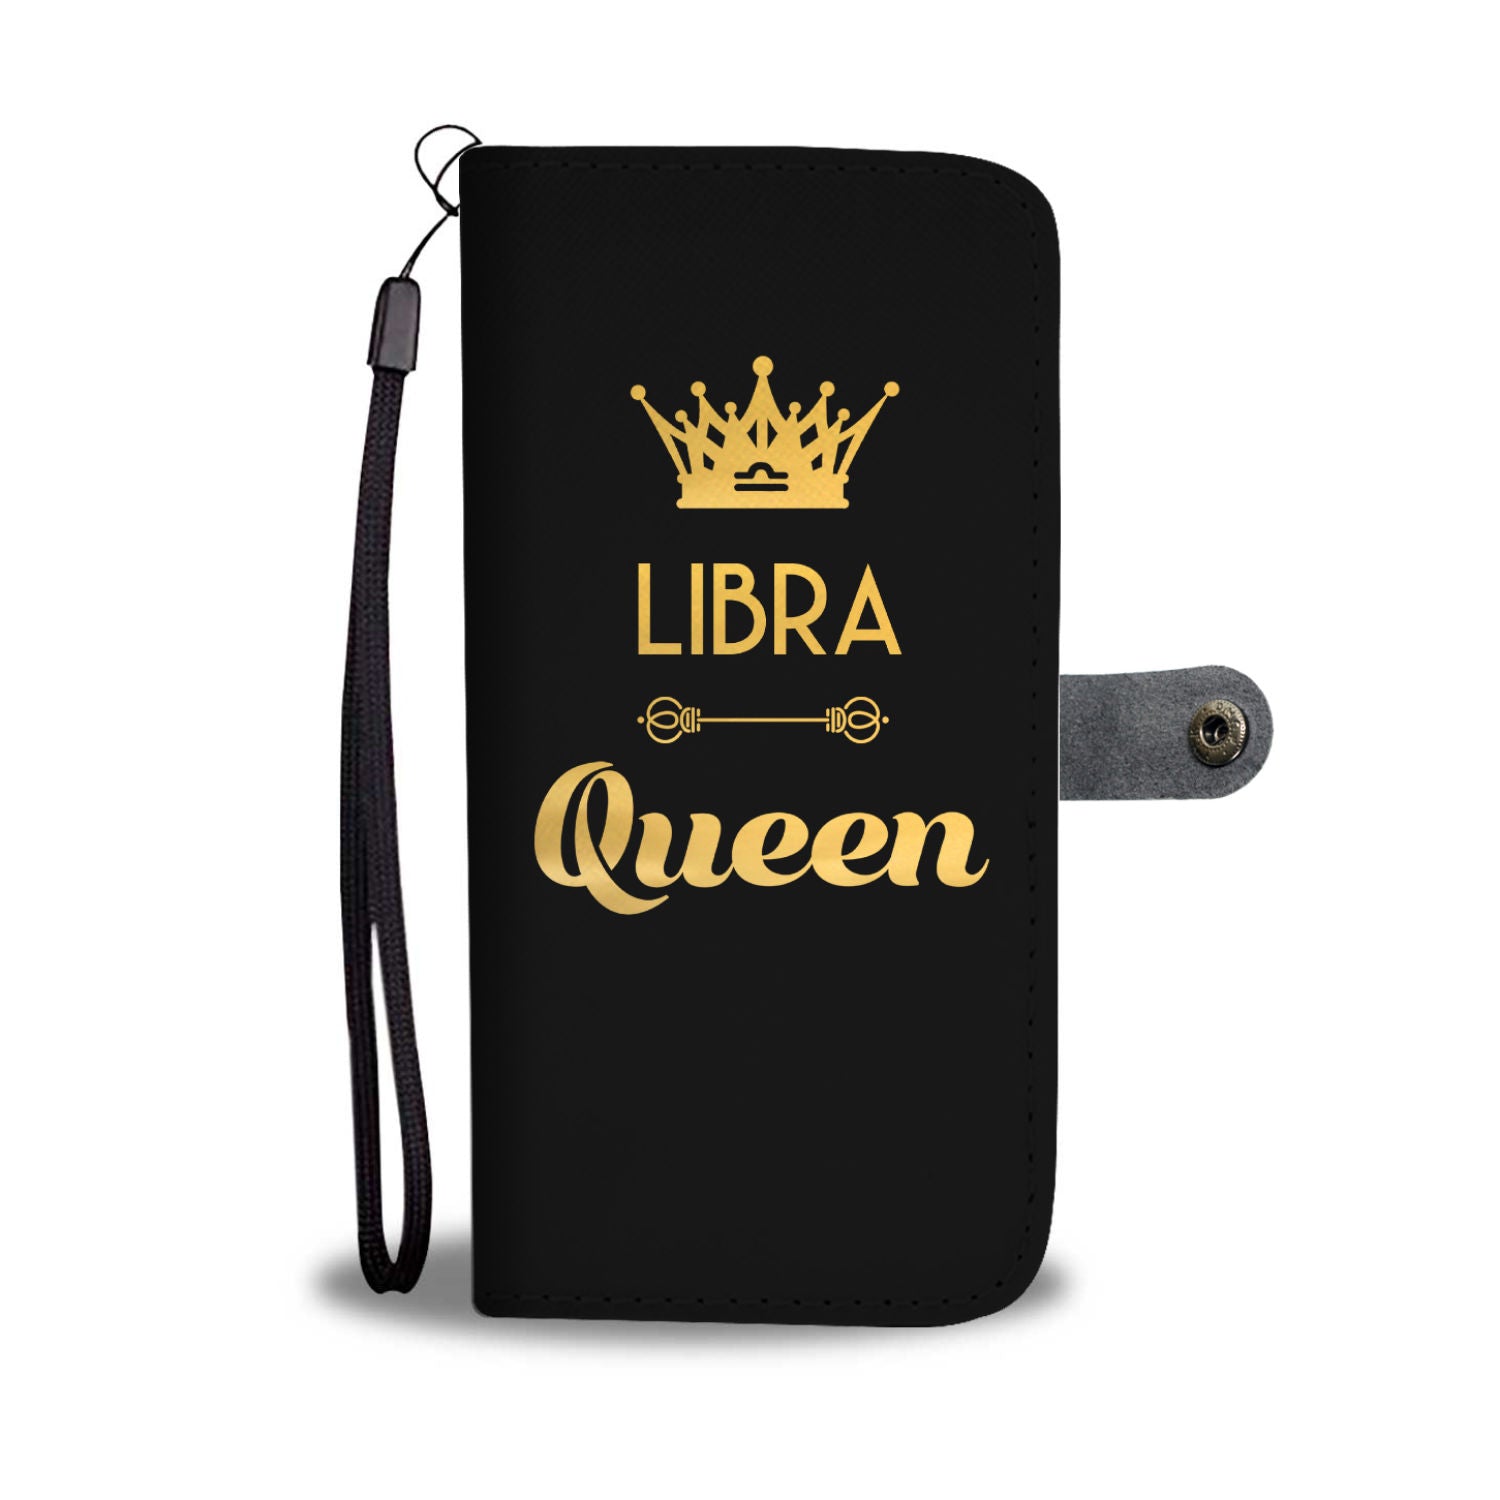 Libra Queen Phone Wallet